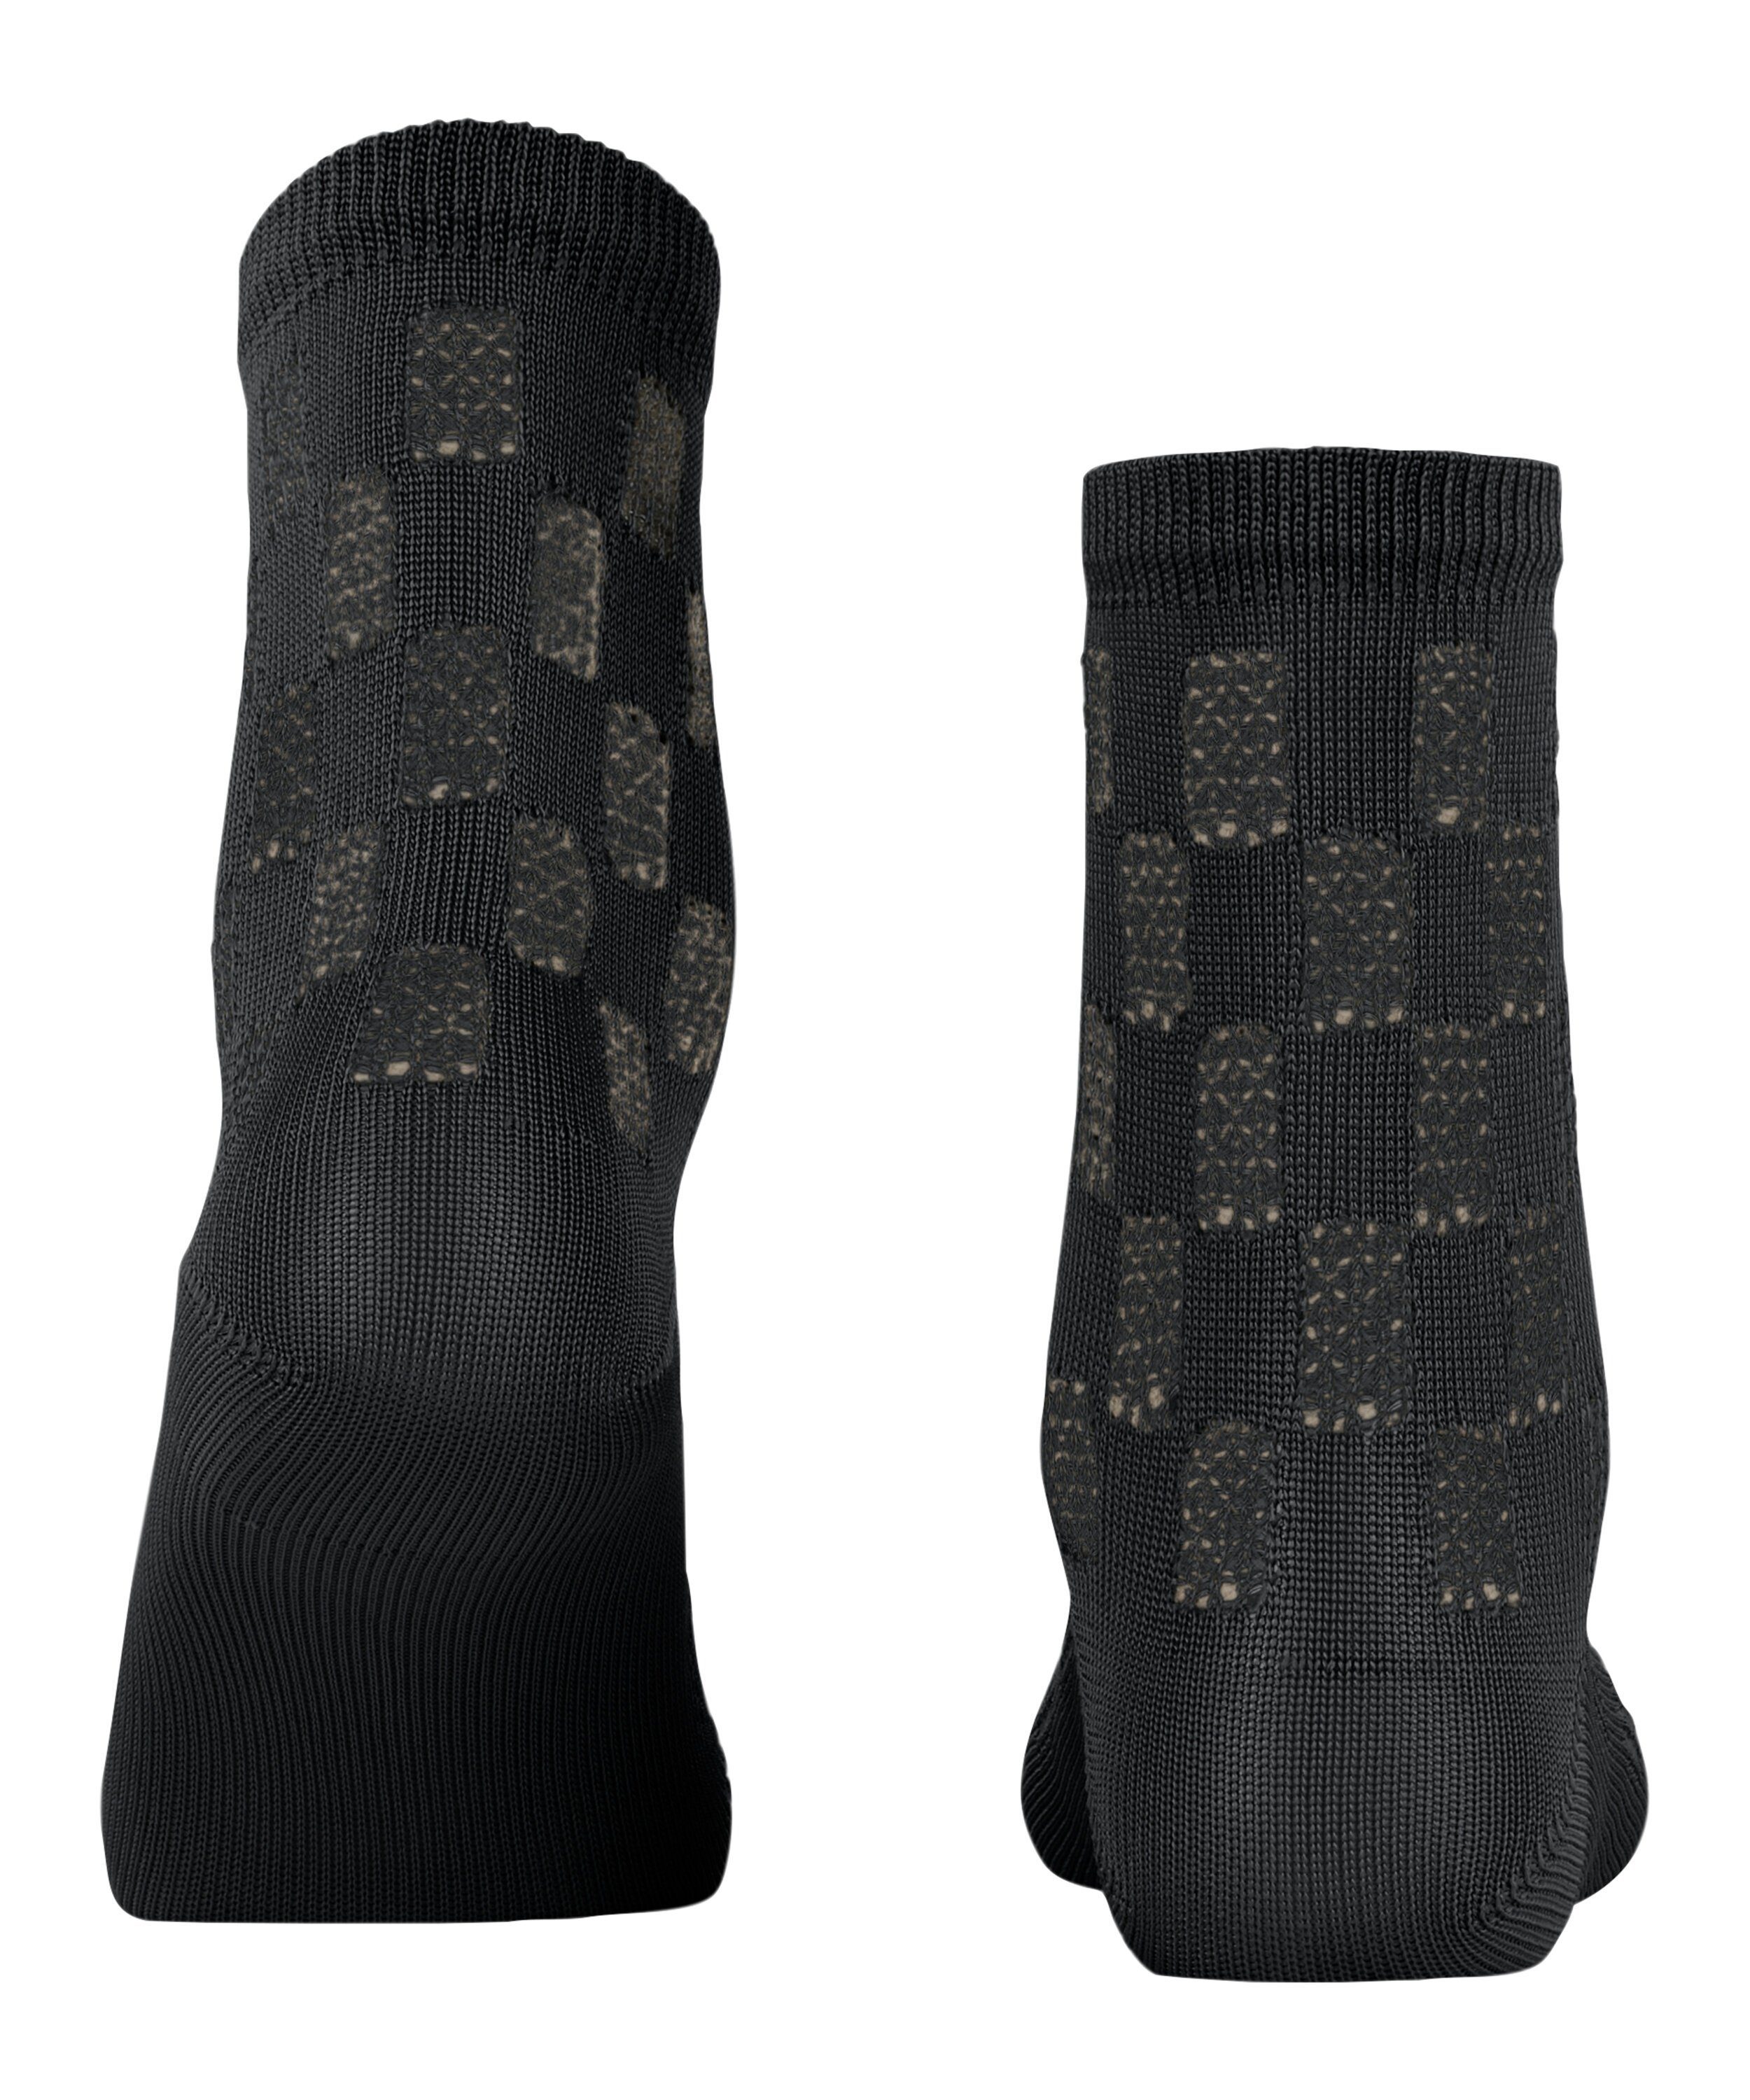 Purity FALKE Socken black (3000) (1-Paar)